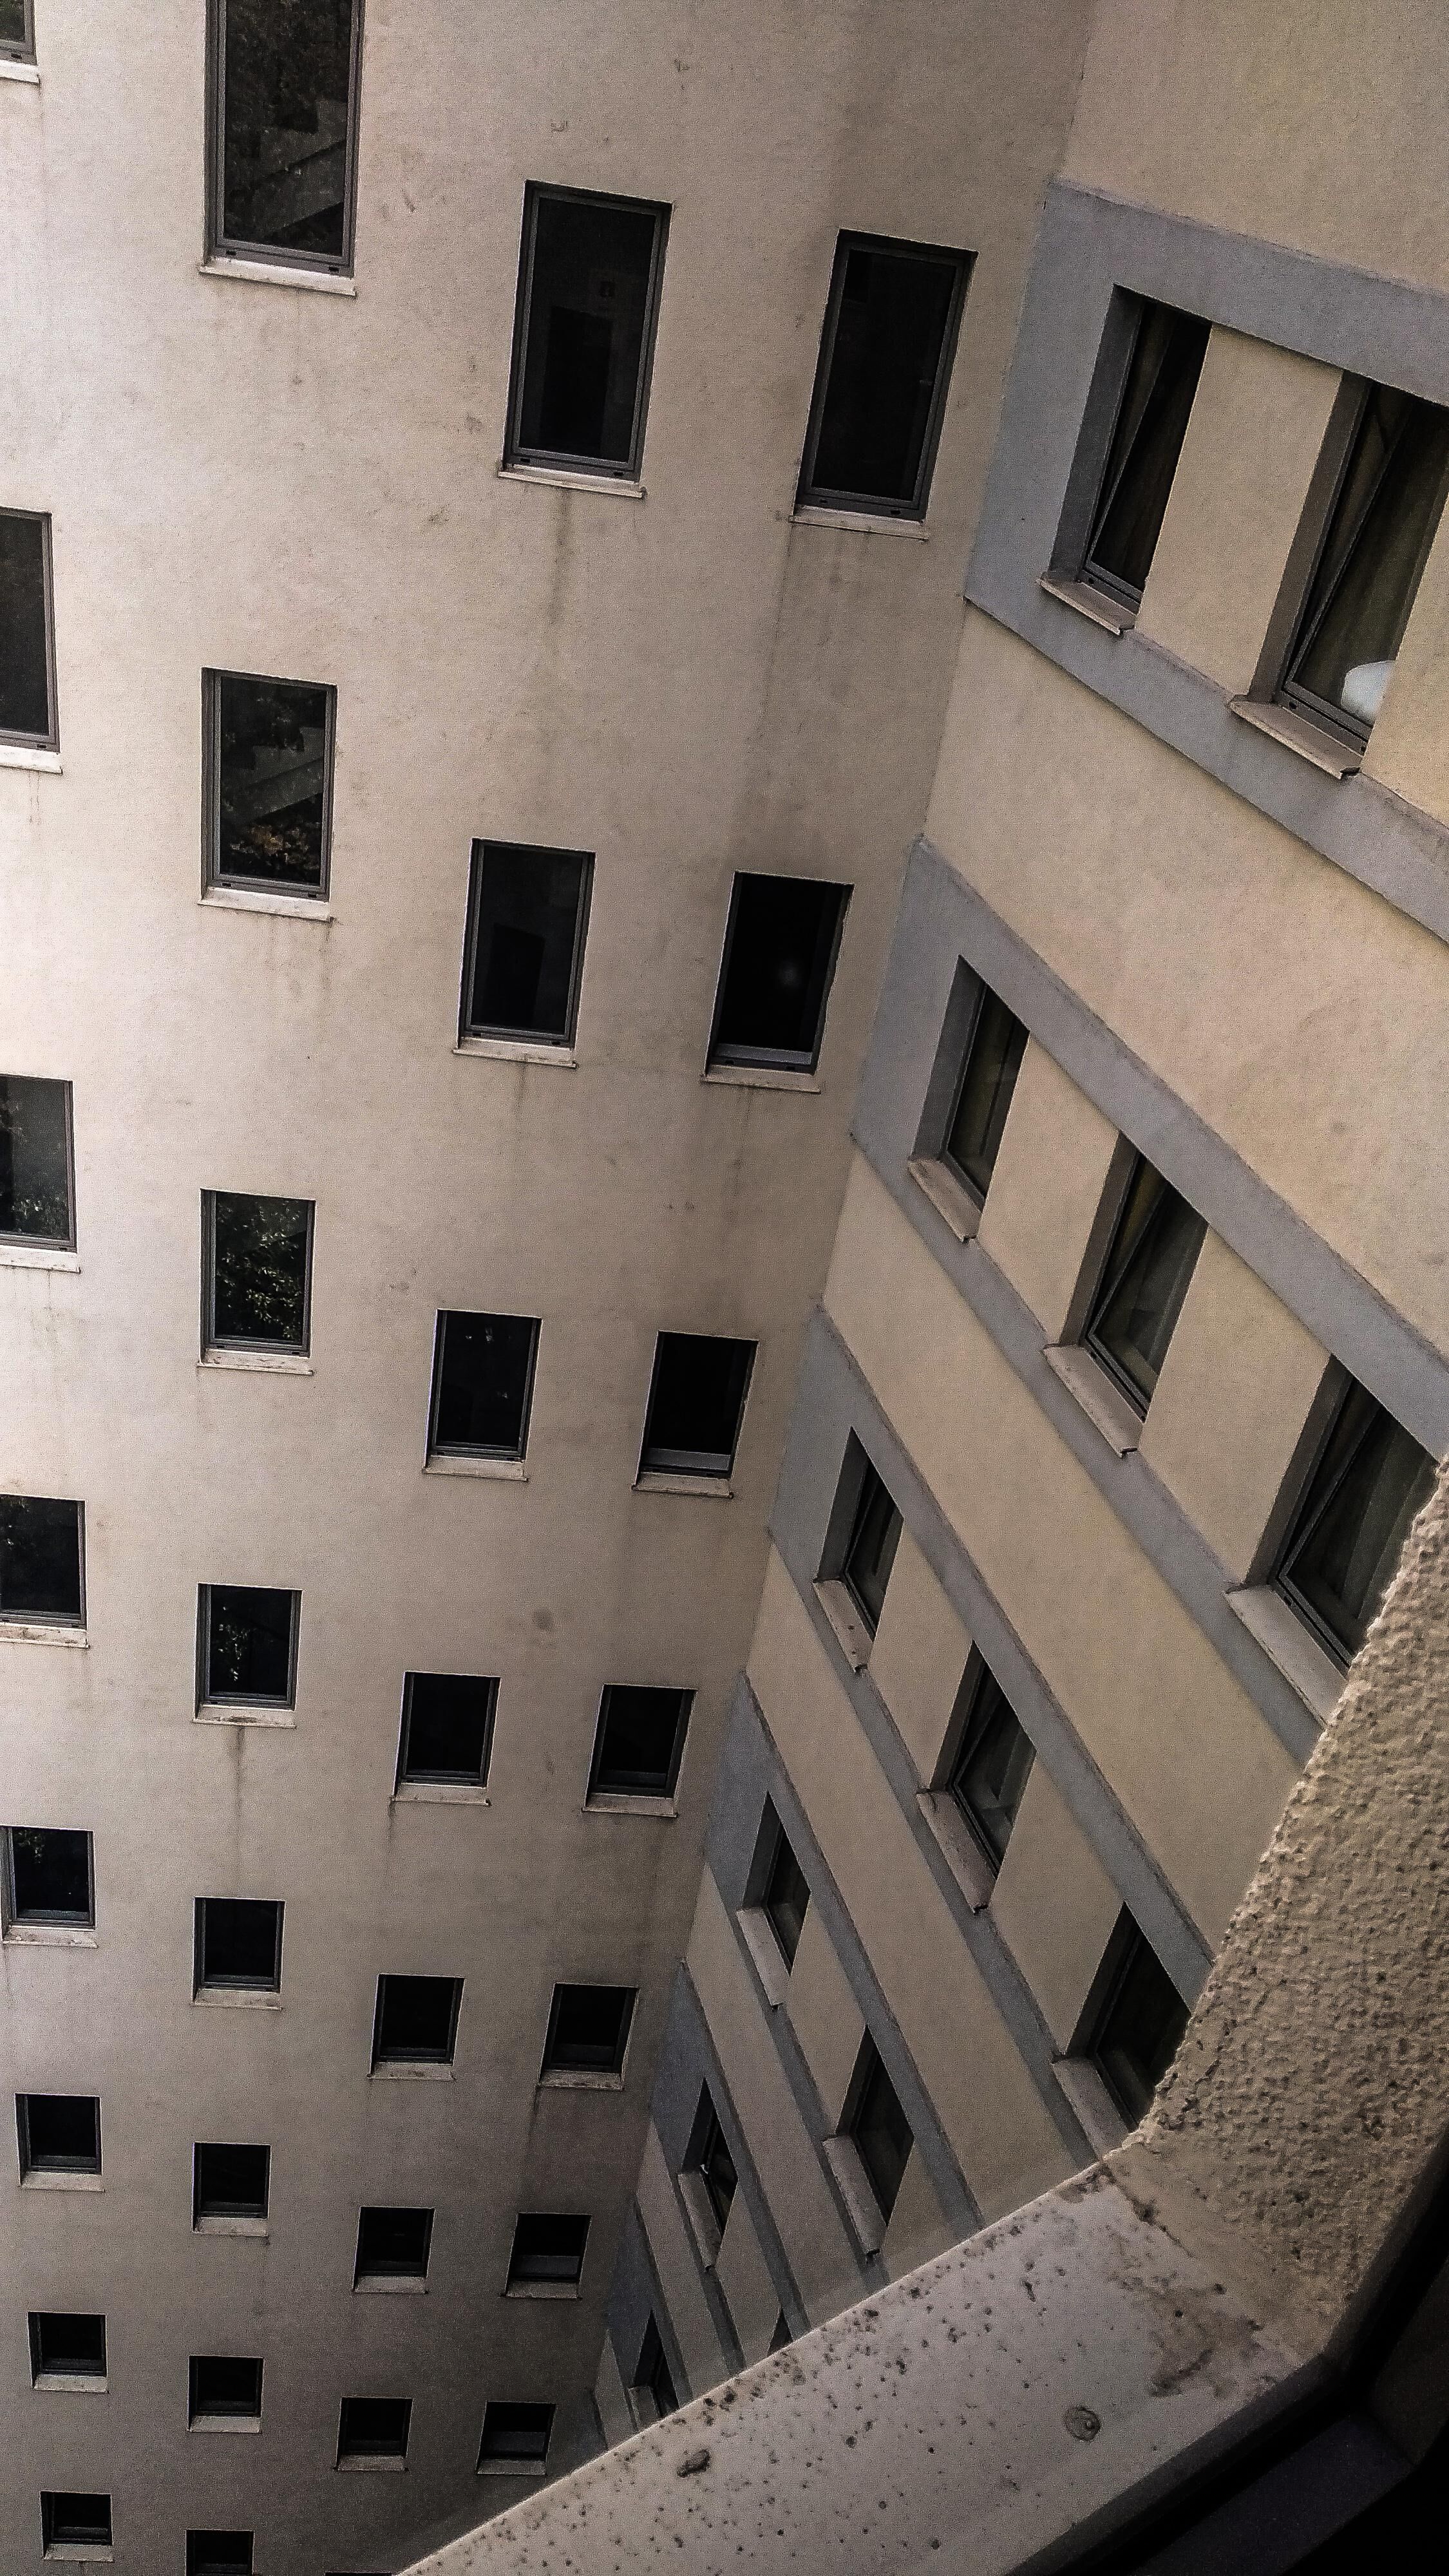 Level 188: “Window Hotel of Melancholy”, Lanimil Corporation: Backrooms  Documentation